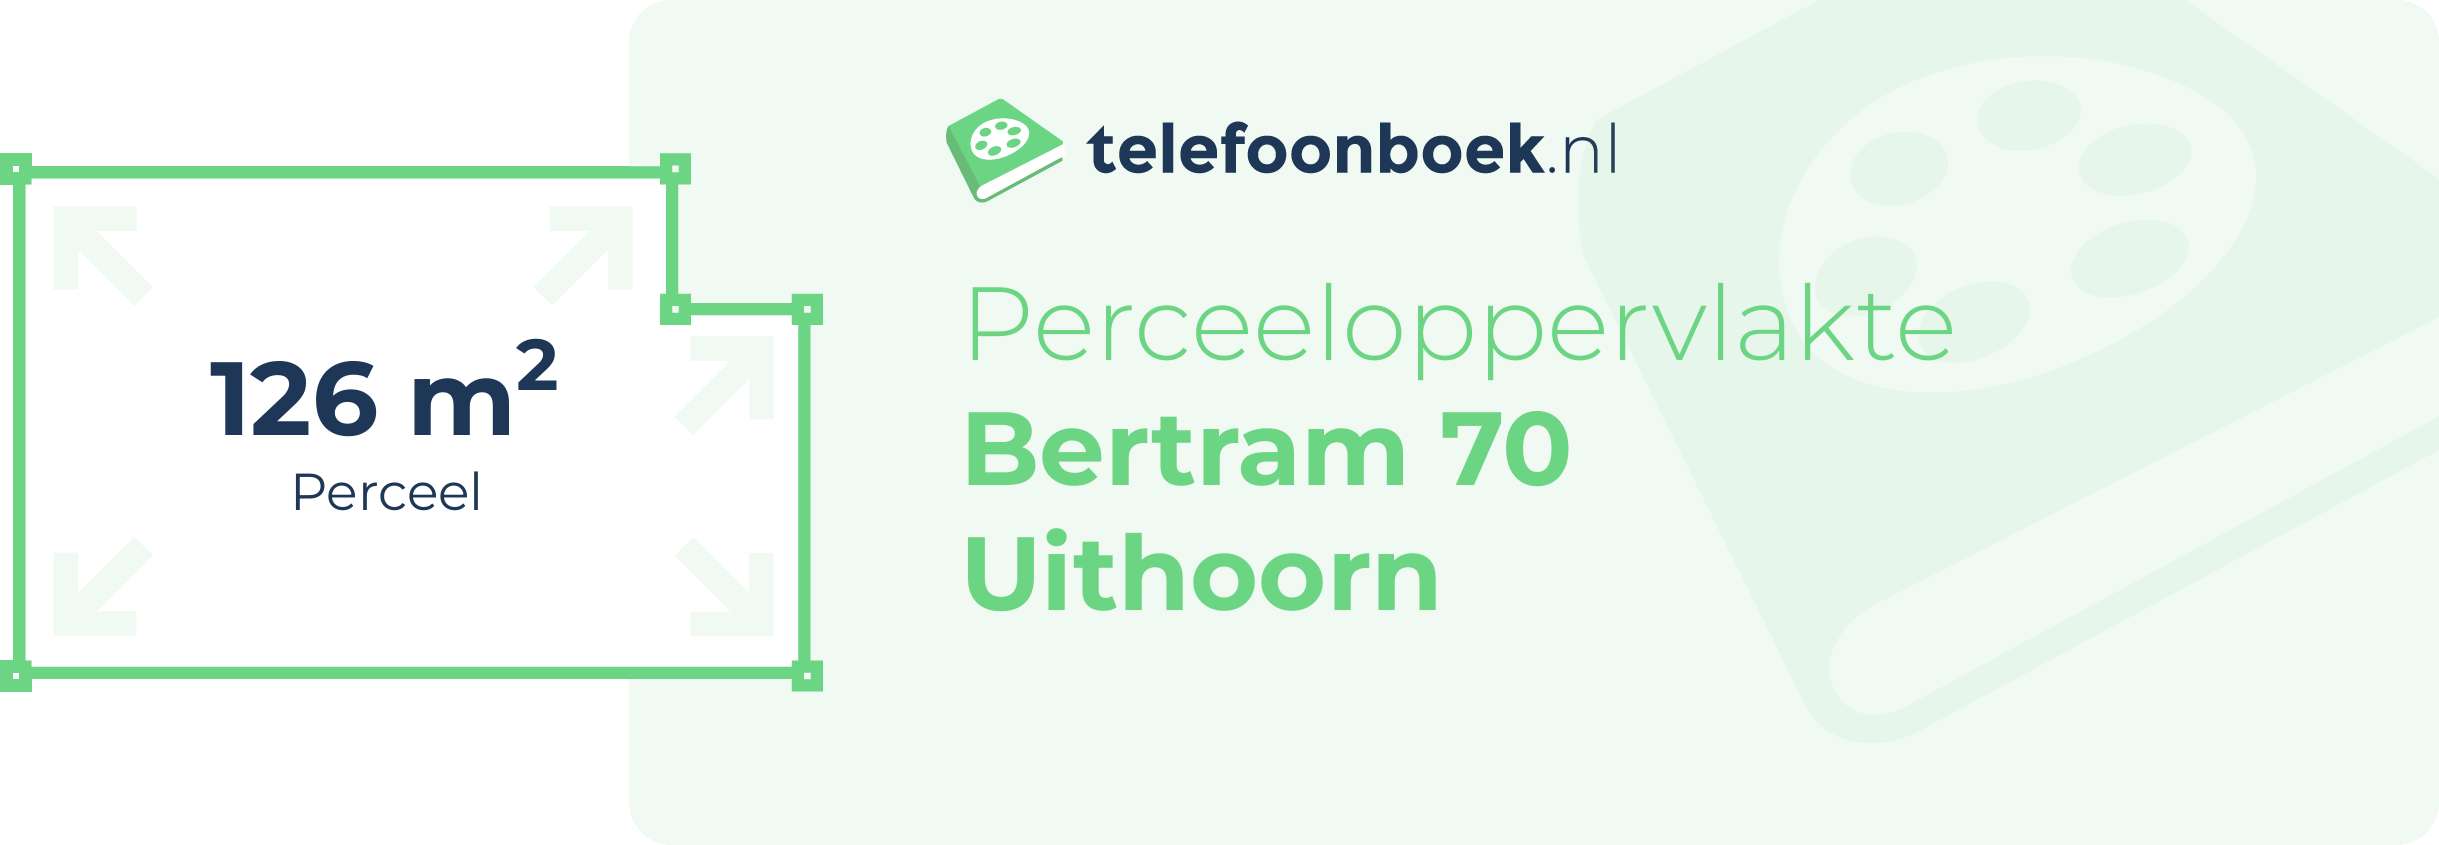 Perceeloppervlakte Bertram 70 Uithoorn